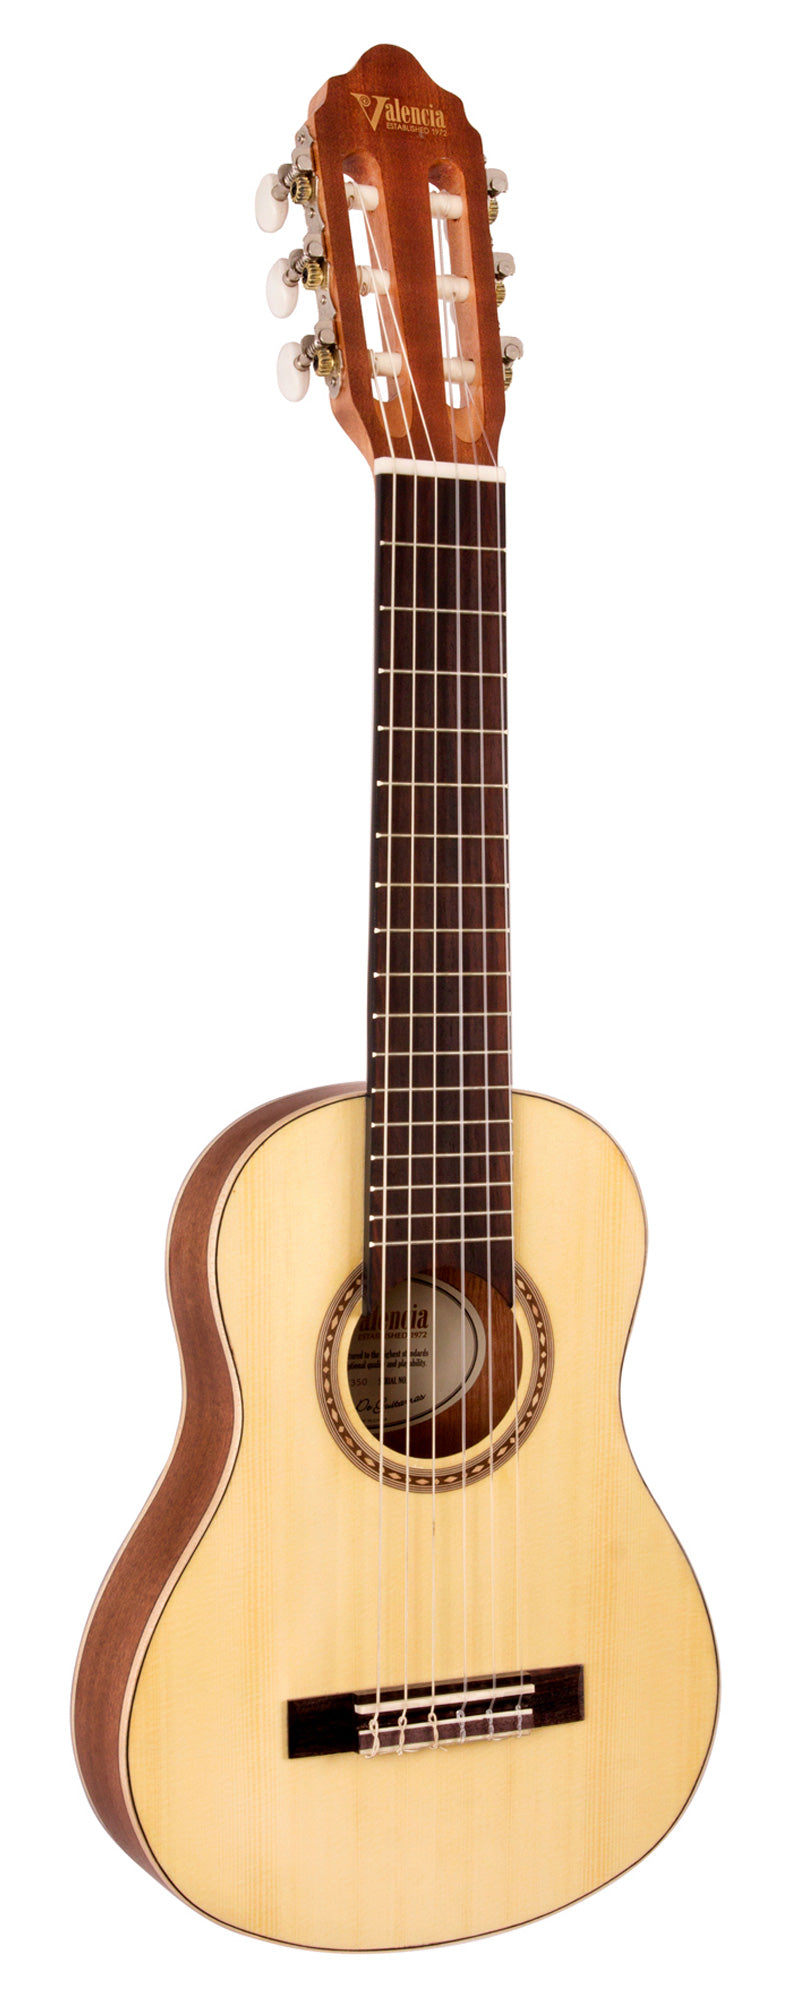 Guitarlele/Travel Guitar Valencia VC350